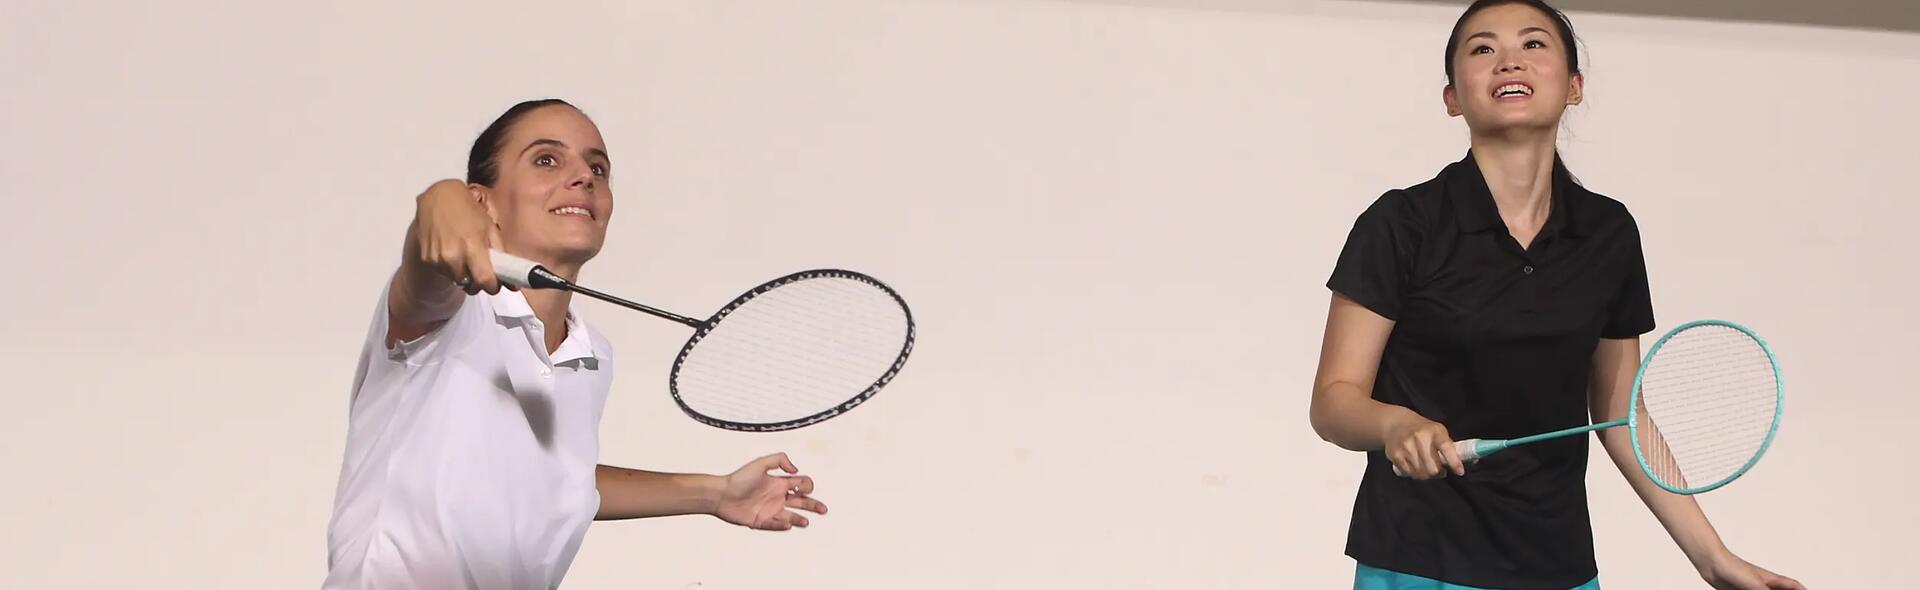 kobiety z rakietami do badmintona w rękach ubrane w stroje do gry w badmintona